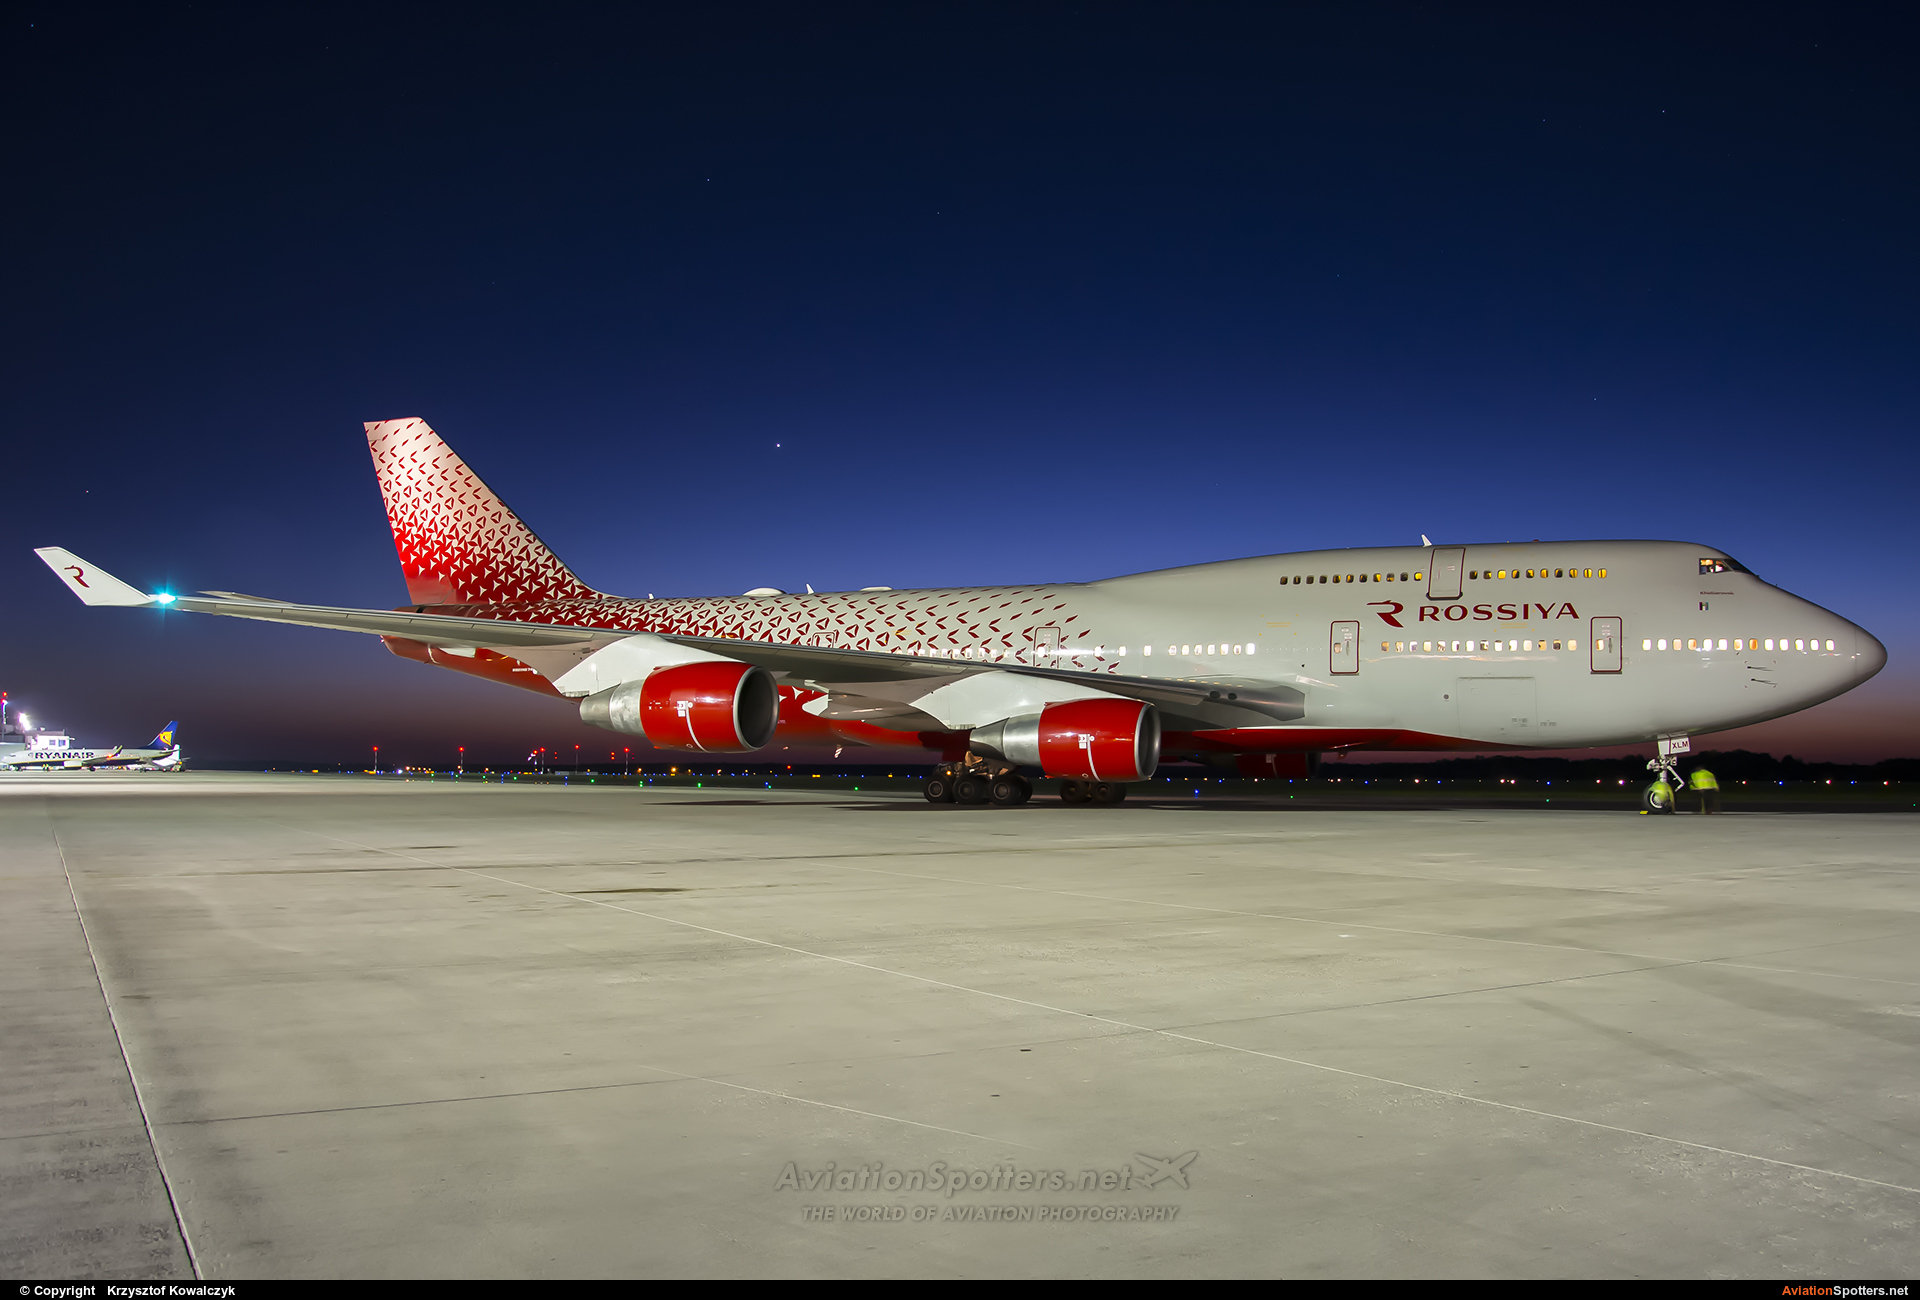 Rossiya Airlines  -  747-412  (EI-XLM ) By Krzysztof Kowalczyk (Krzysztof Kowalczyk)